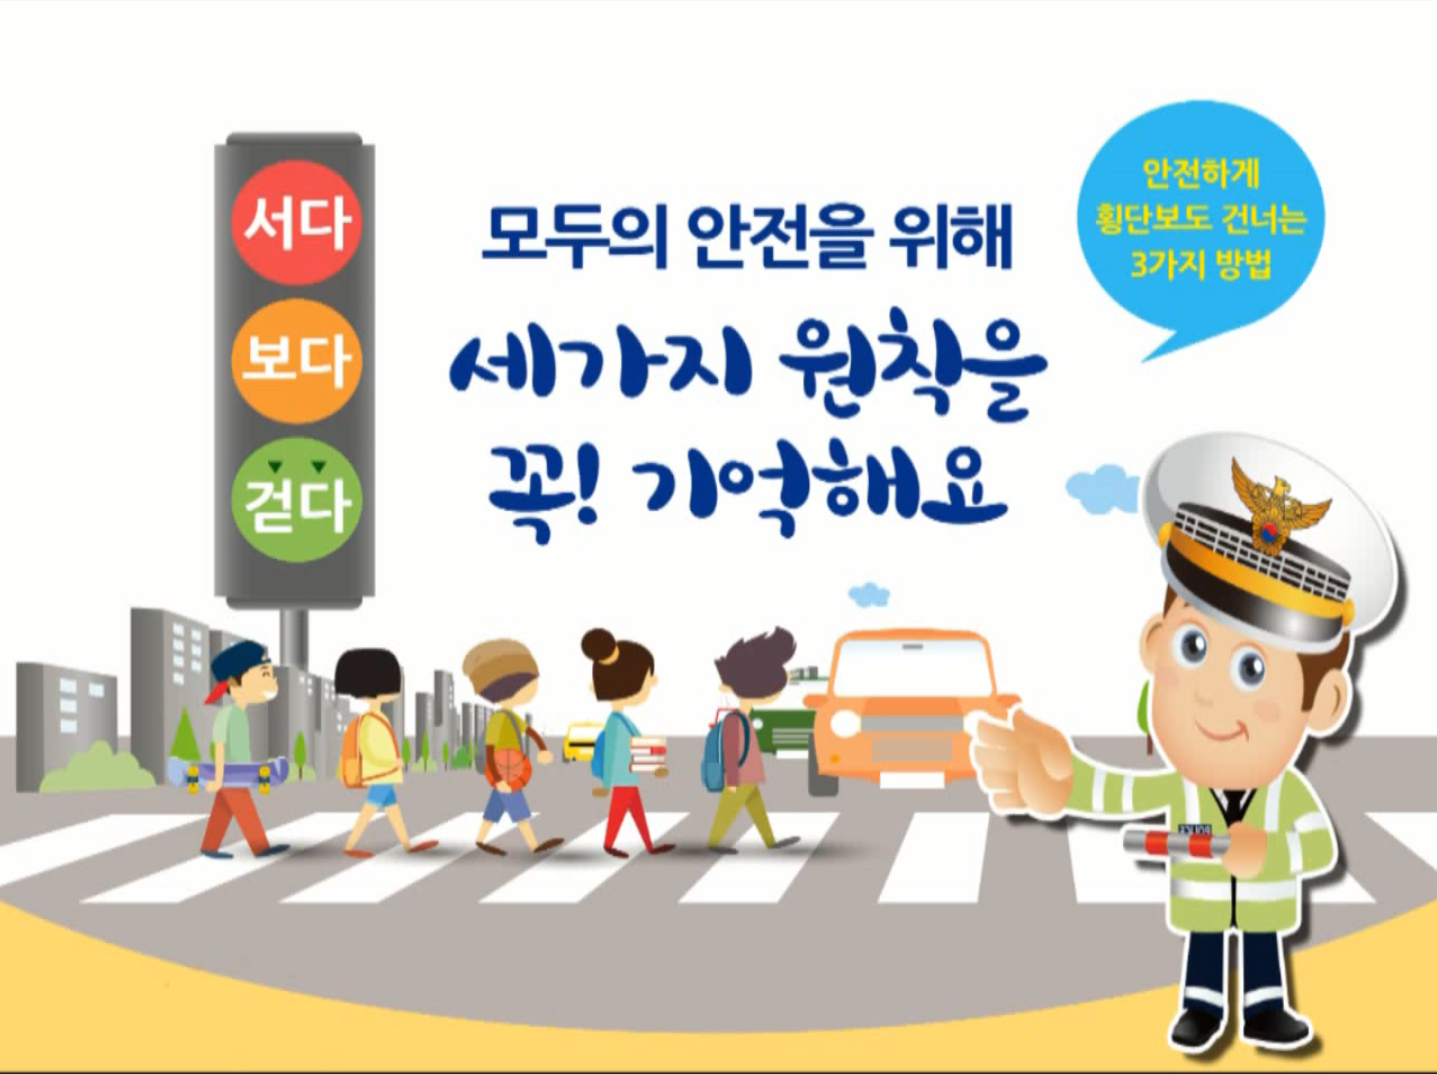 교통 안전보행 홍보 영상